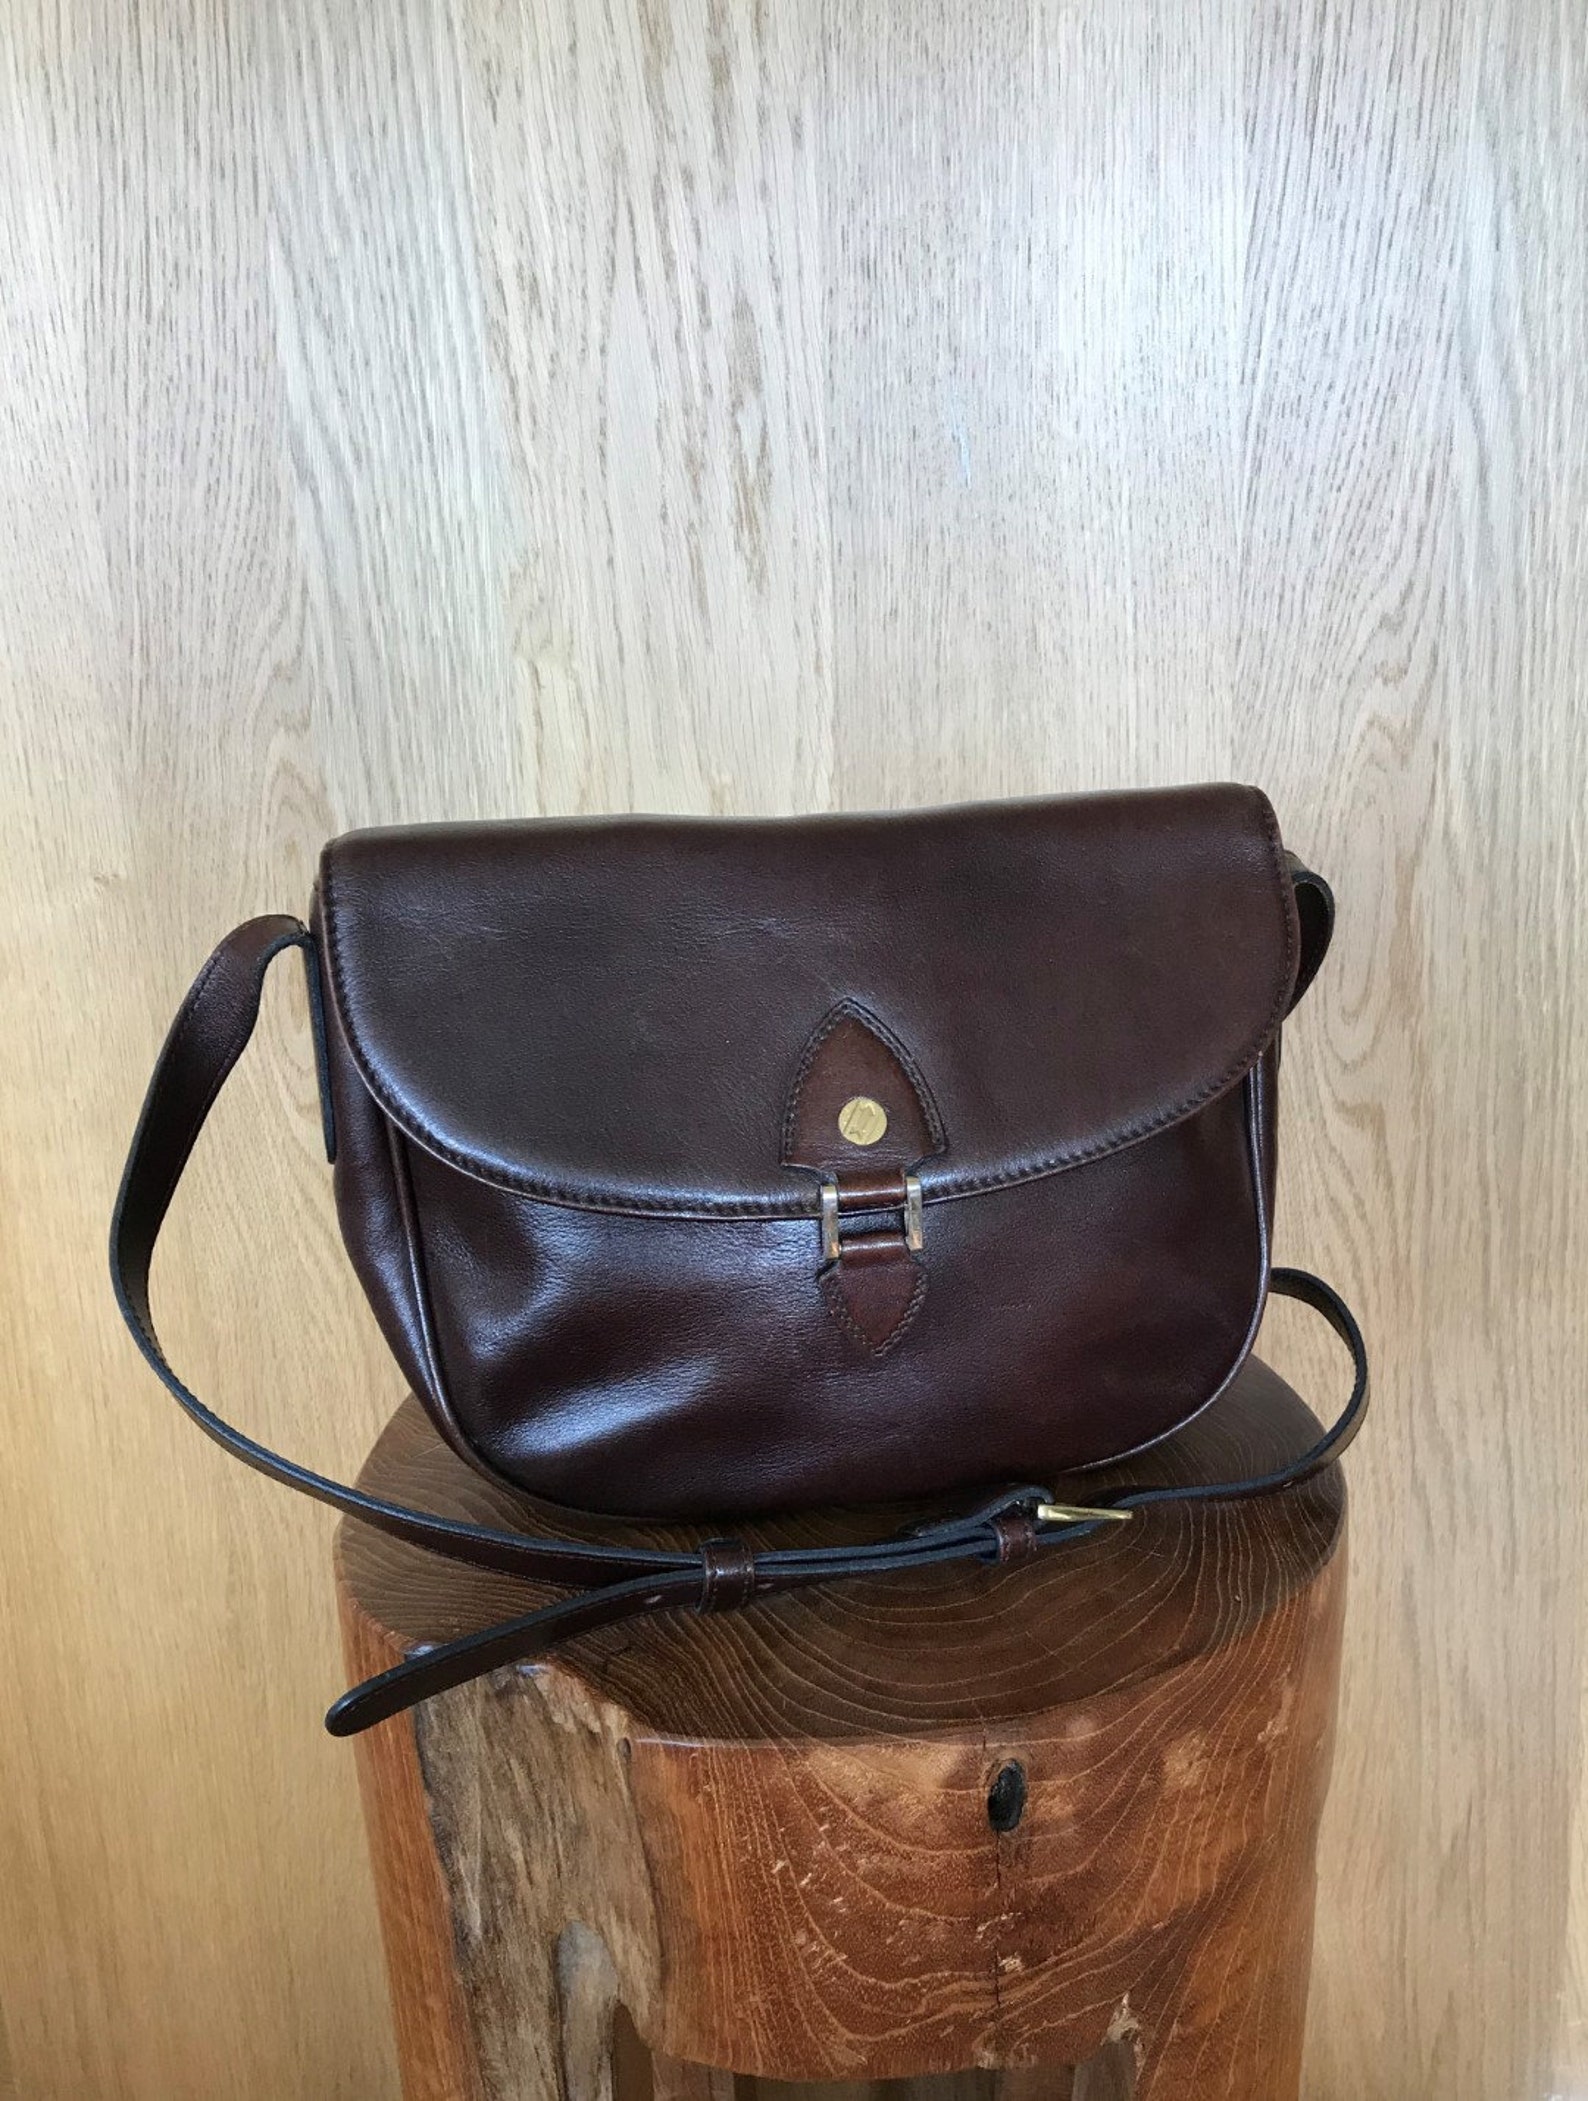 Goldpfeil Shoulder Bag Made of Dark Brown Leather - Etsy